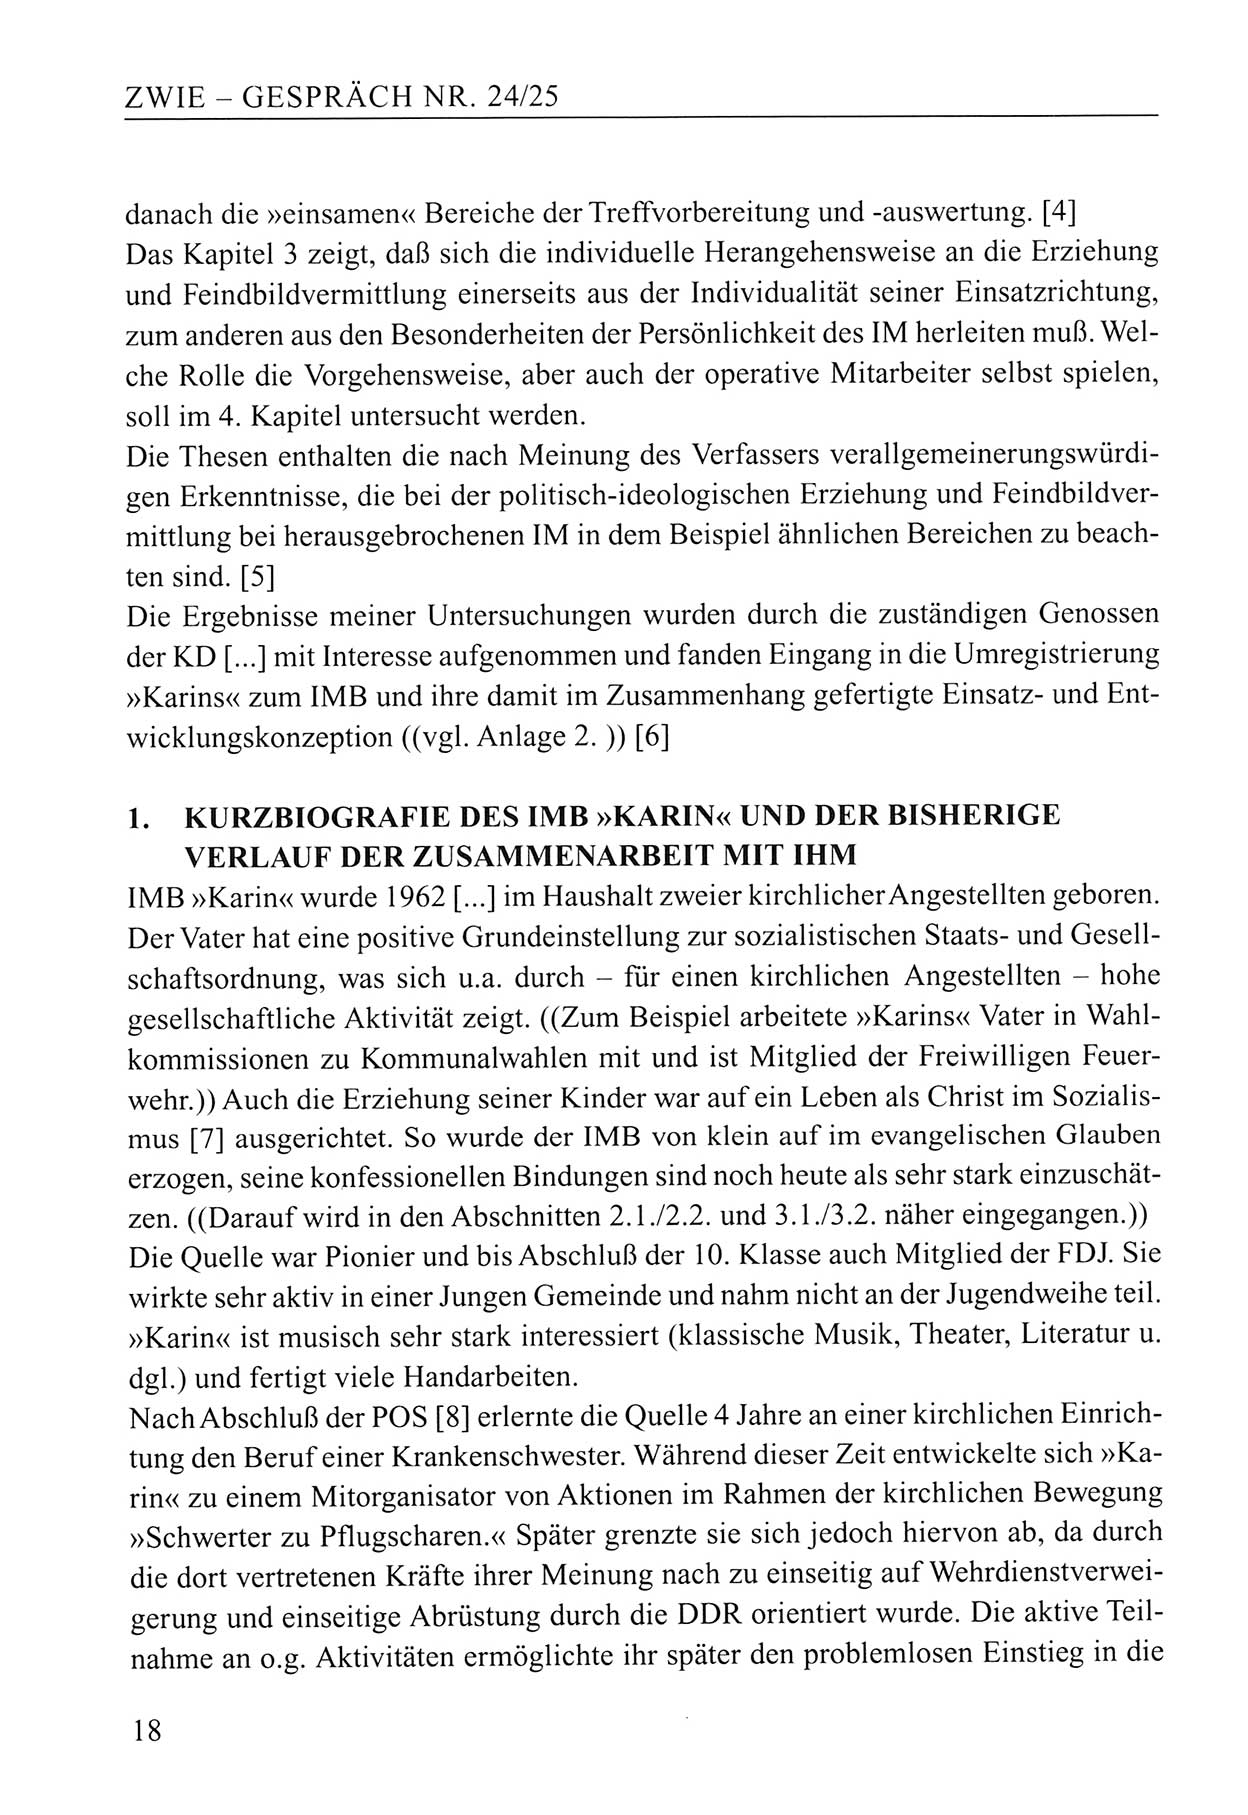 Zwie-Gespräch, Beiträge zum Umgang mit der Staatssicherheits-Vergangenheit [Deutsche Demokratische Republik (DDR)], Ausgabe Nr. 24/25, Berlin 1994, Seite 18 (Zwie-Gespr. Ausg. 24/25 1994, S. 18)